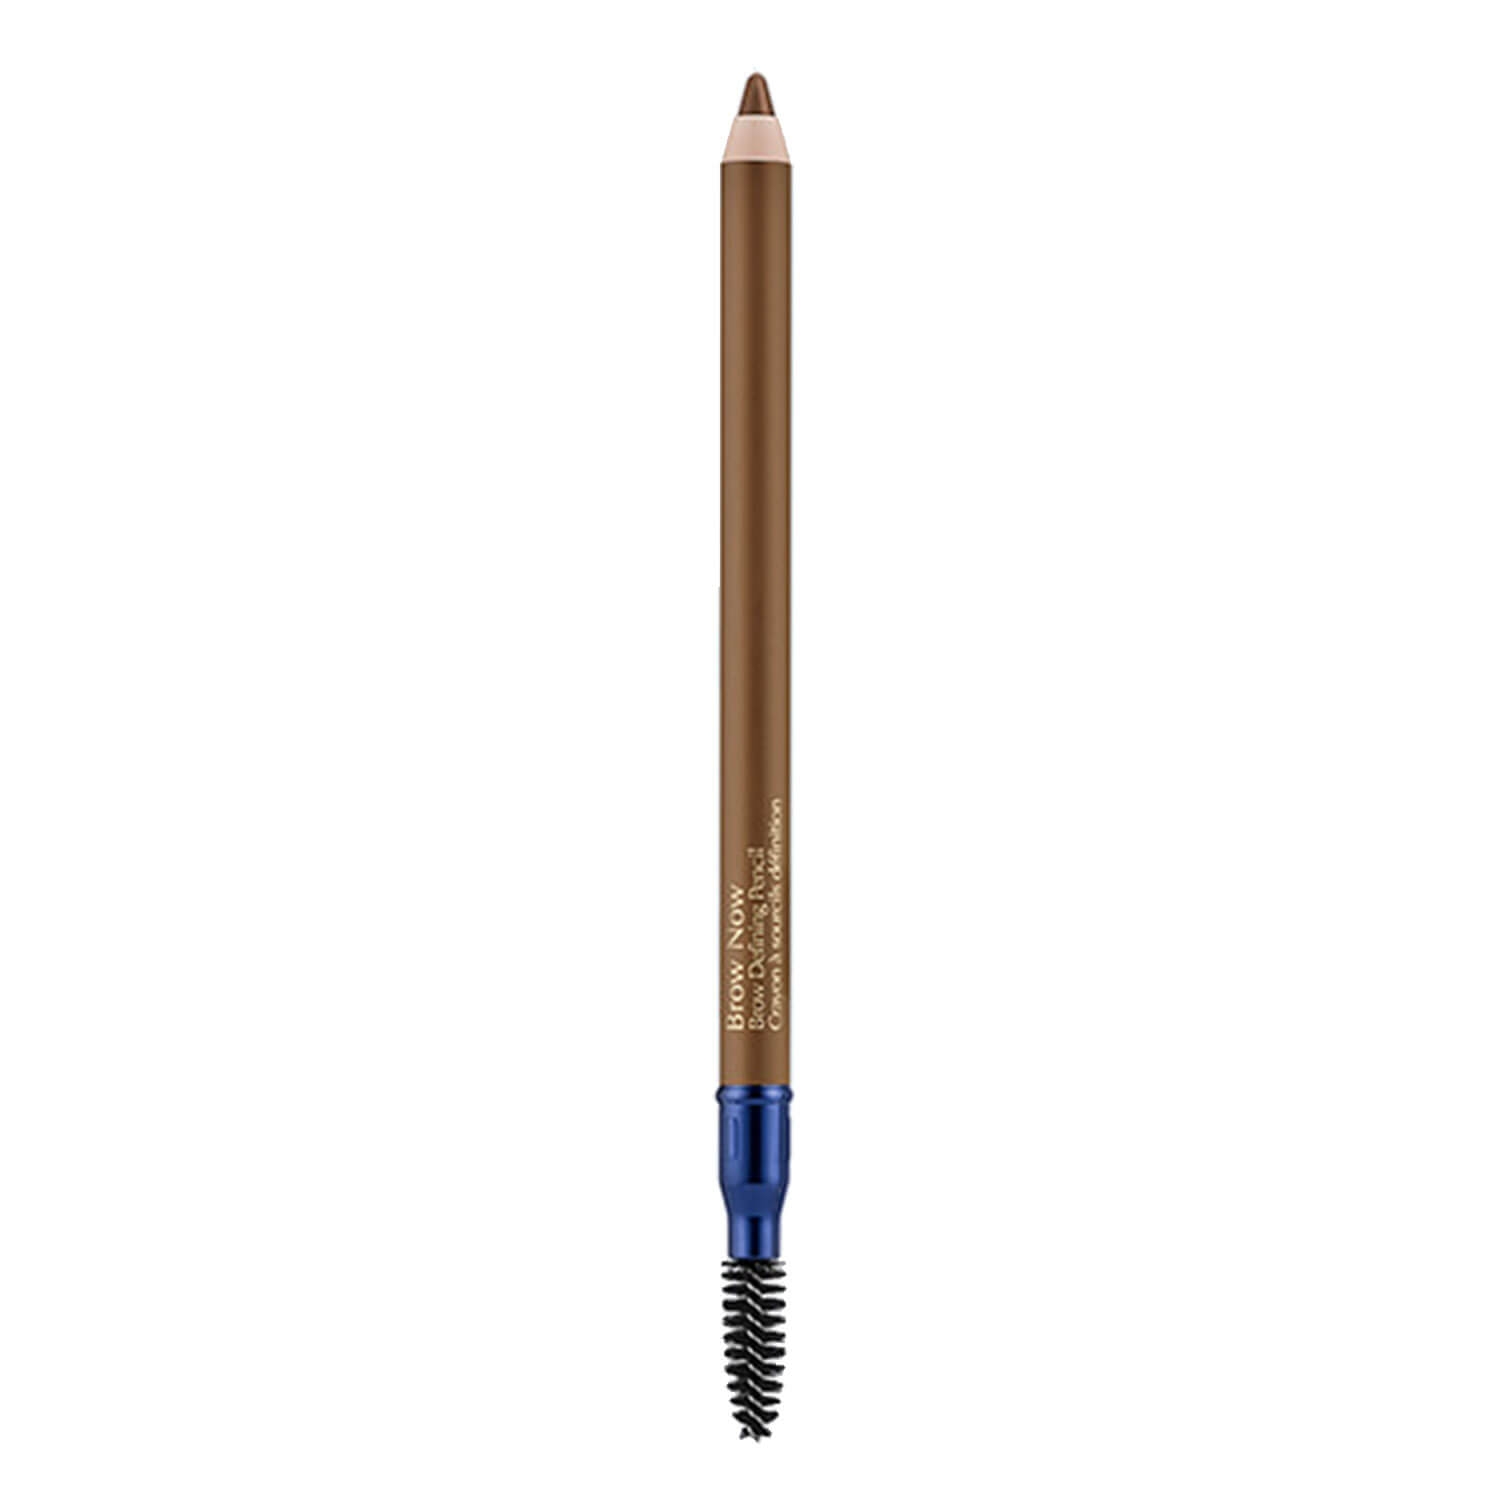 Produktbild von Brow Now - Brow Defining Pencil 03 Brunette